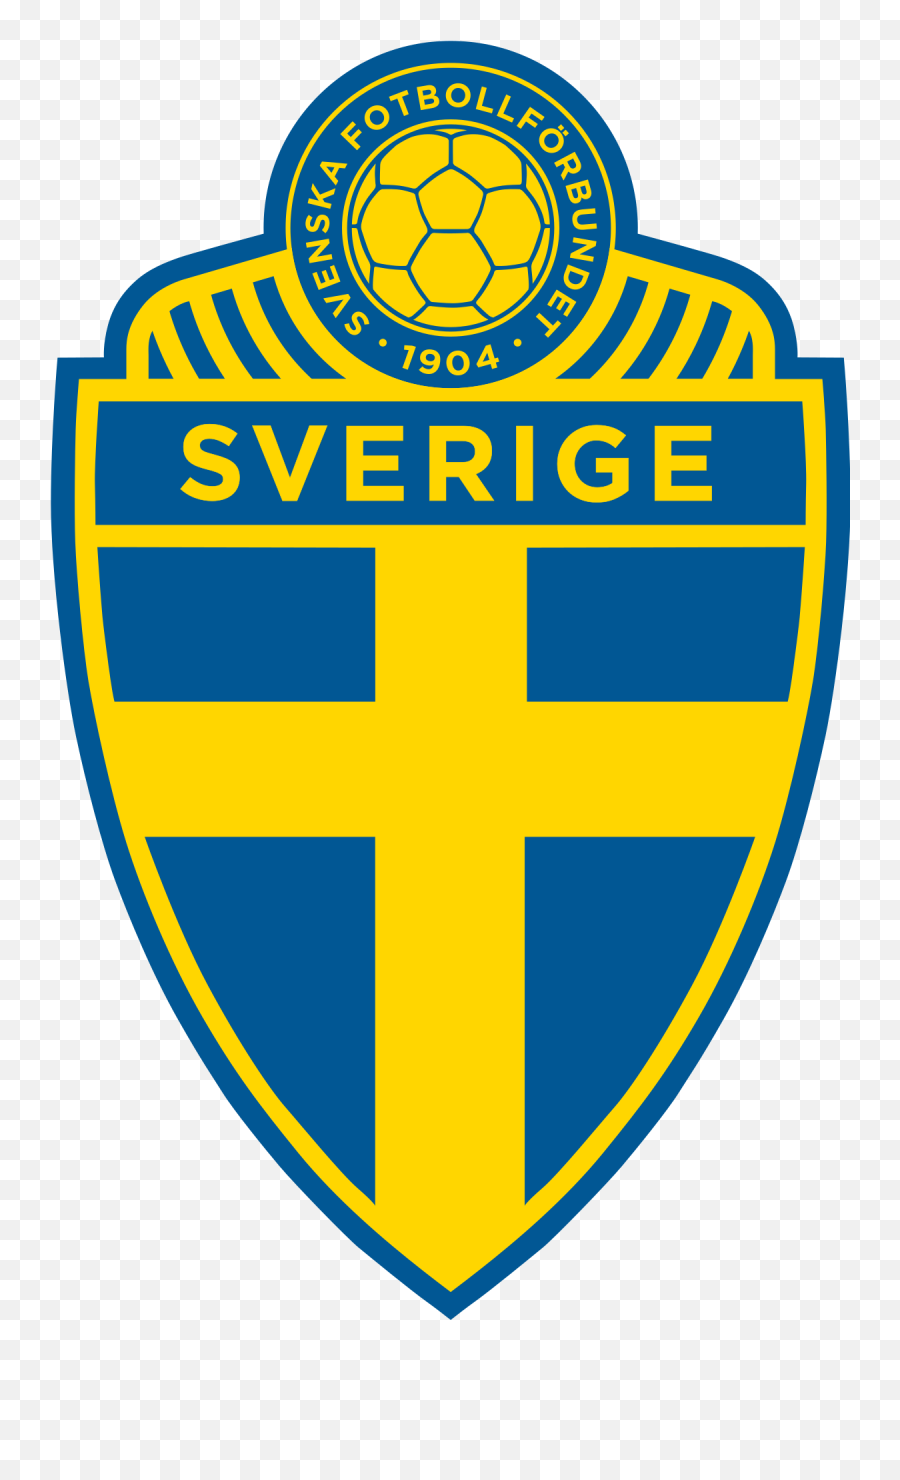 Sweden National Football Team - Sweden National Football Team Logo Png,Mexico Soccer Team Logos